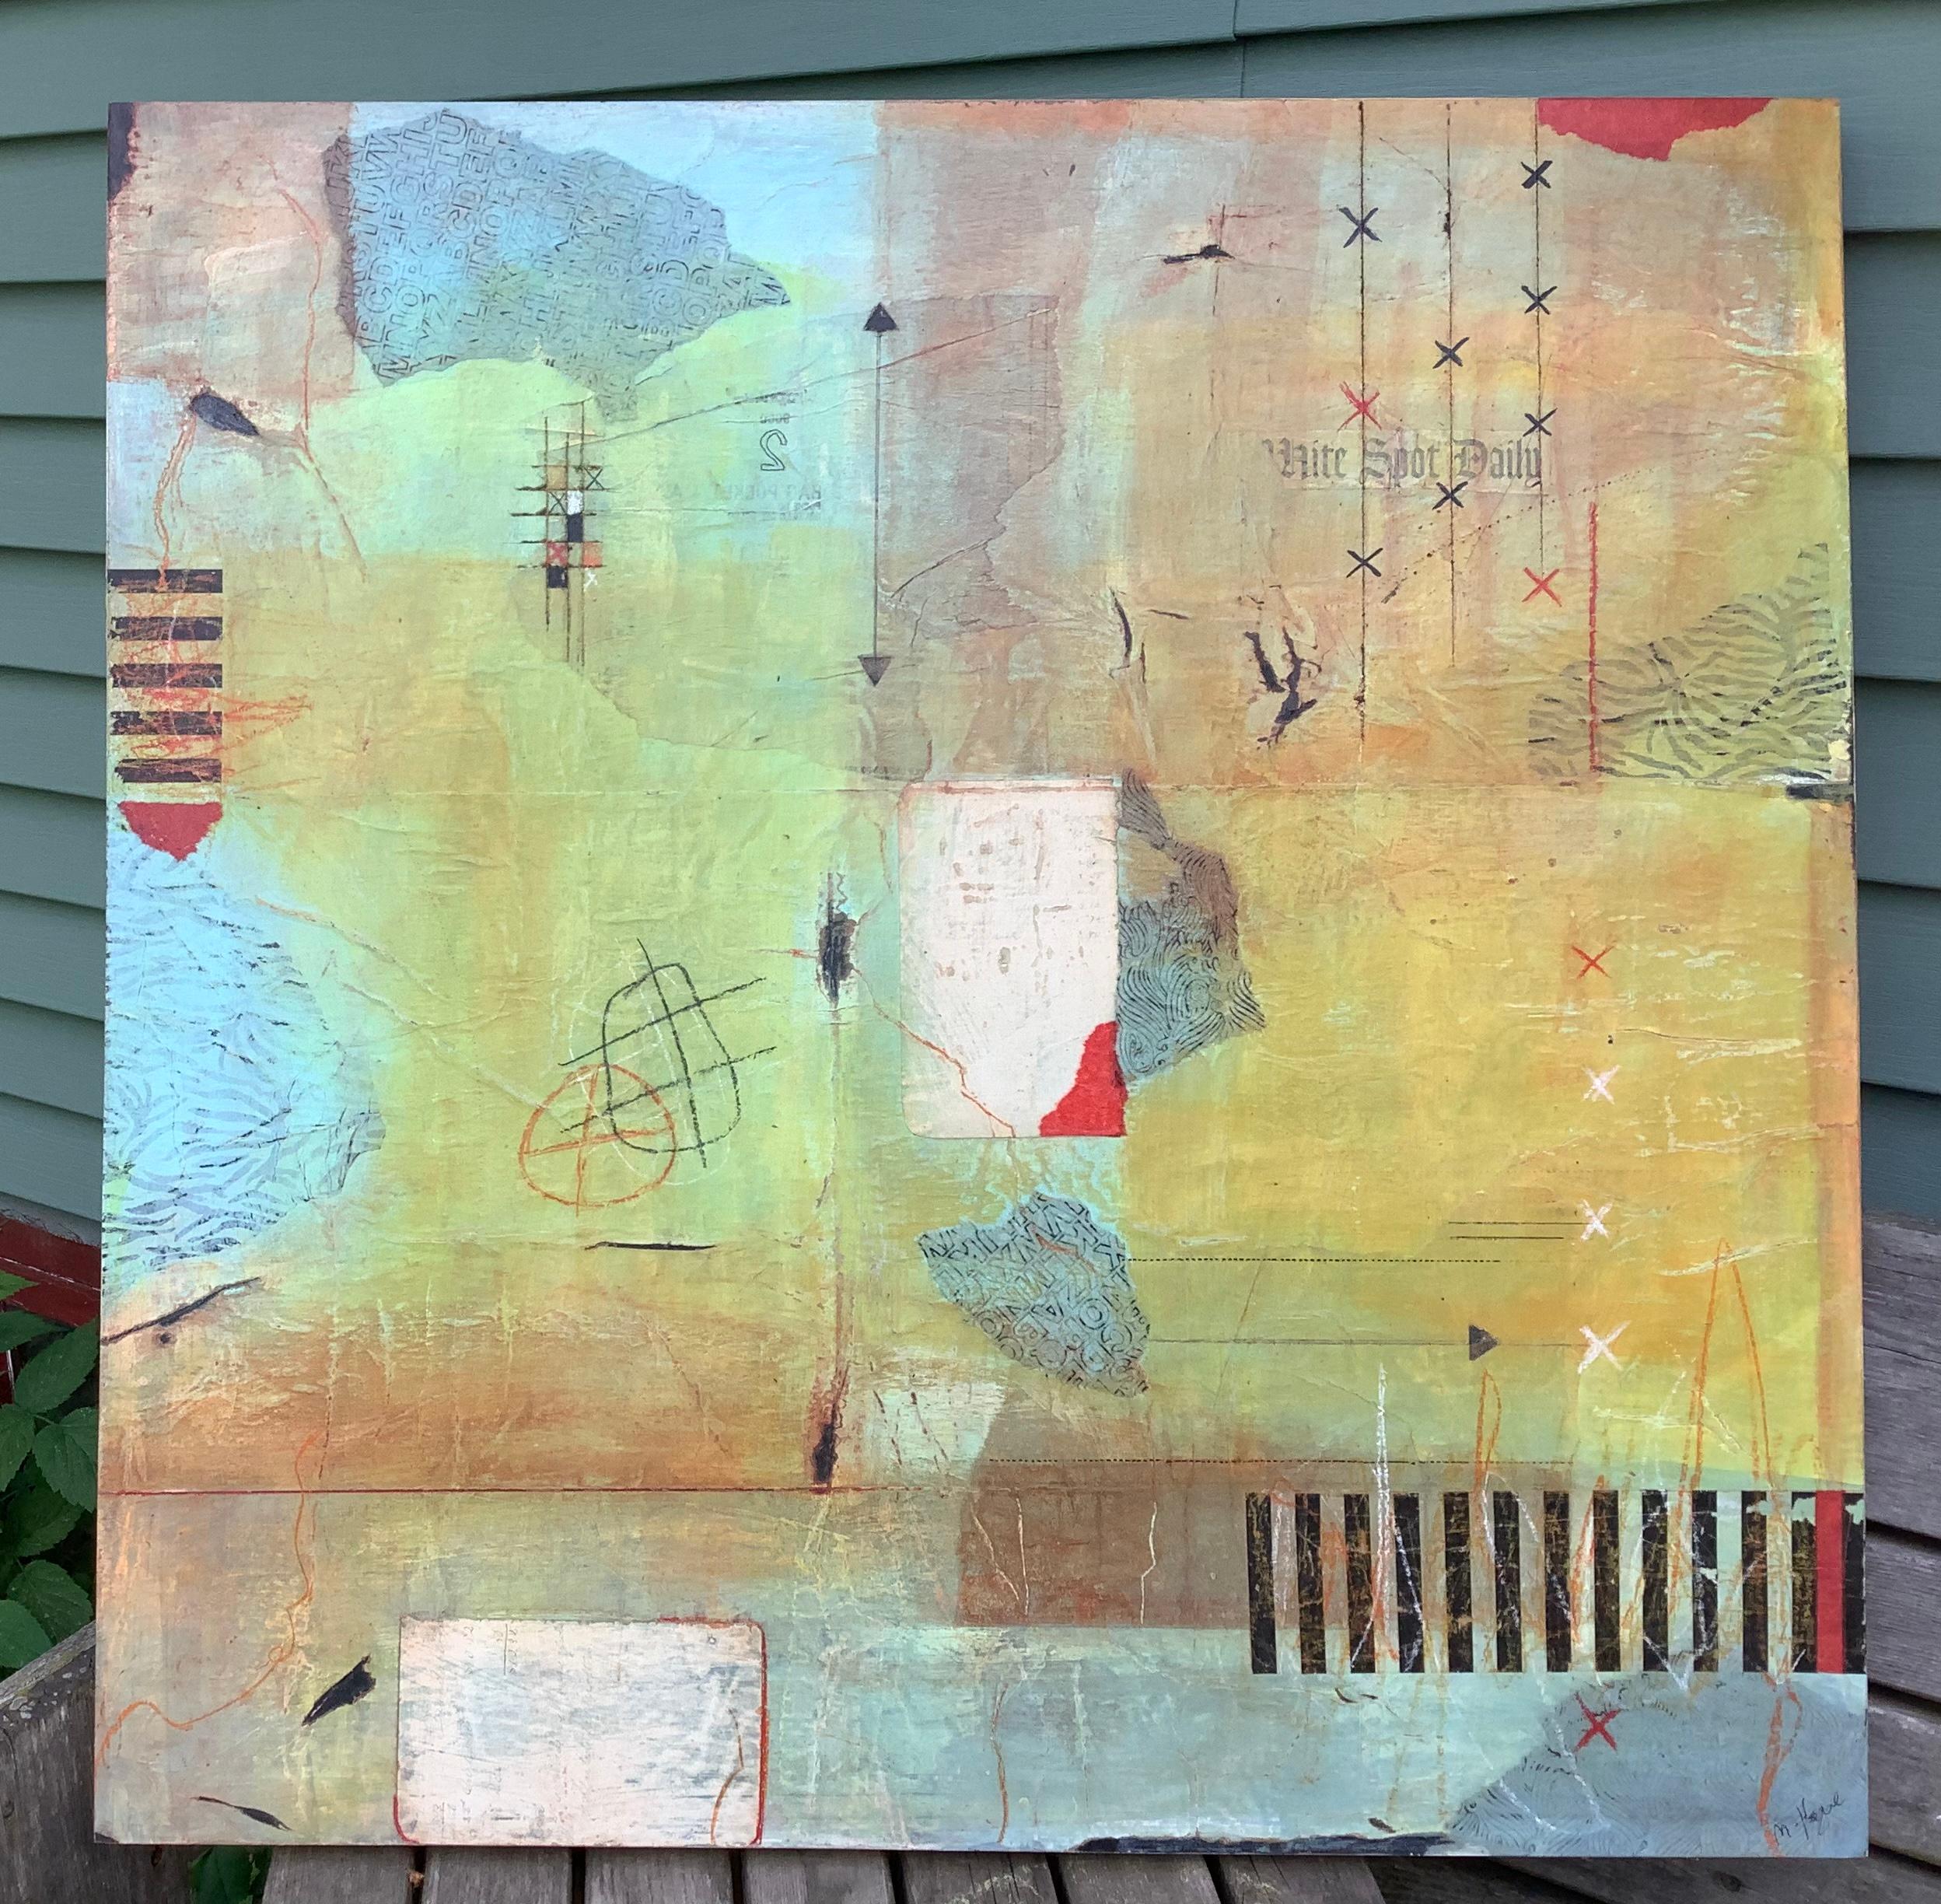 <p>Commentaires de l'artiste<br>L'artiste Margriet Hogue présente une pièce abstraite collée avec une douce palette de pastels. Les papiers dégradés constituent la toile vivante. Des motifs énigmatiques à l'encre, au marqueur et aux crayons de